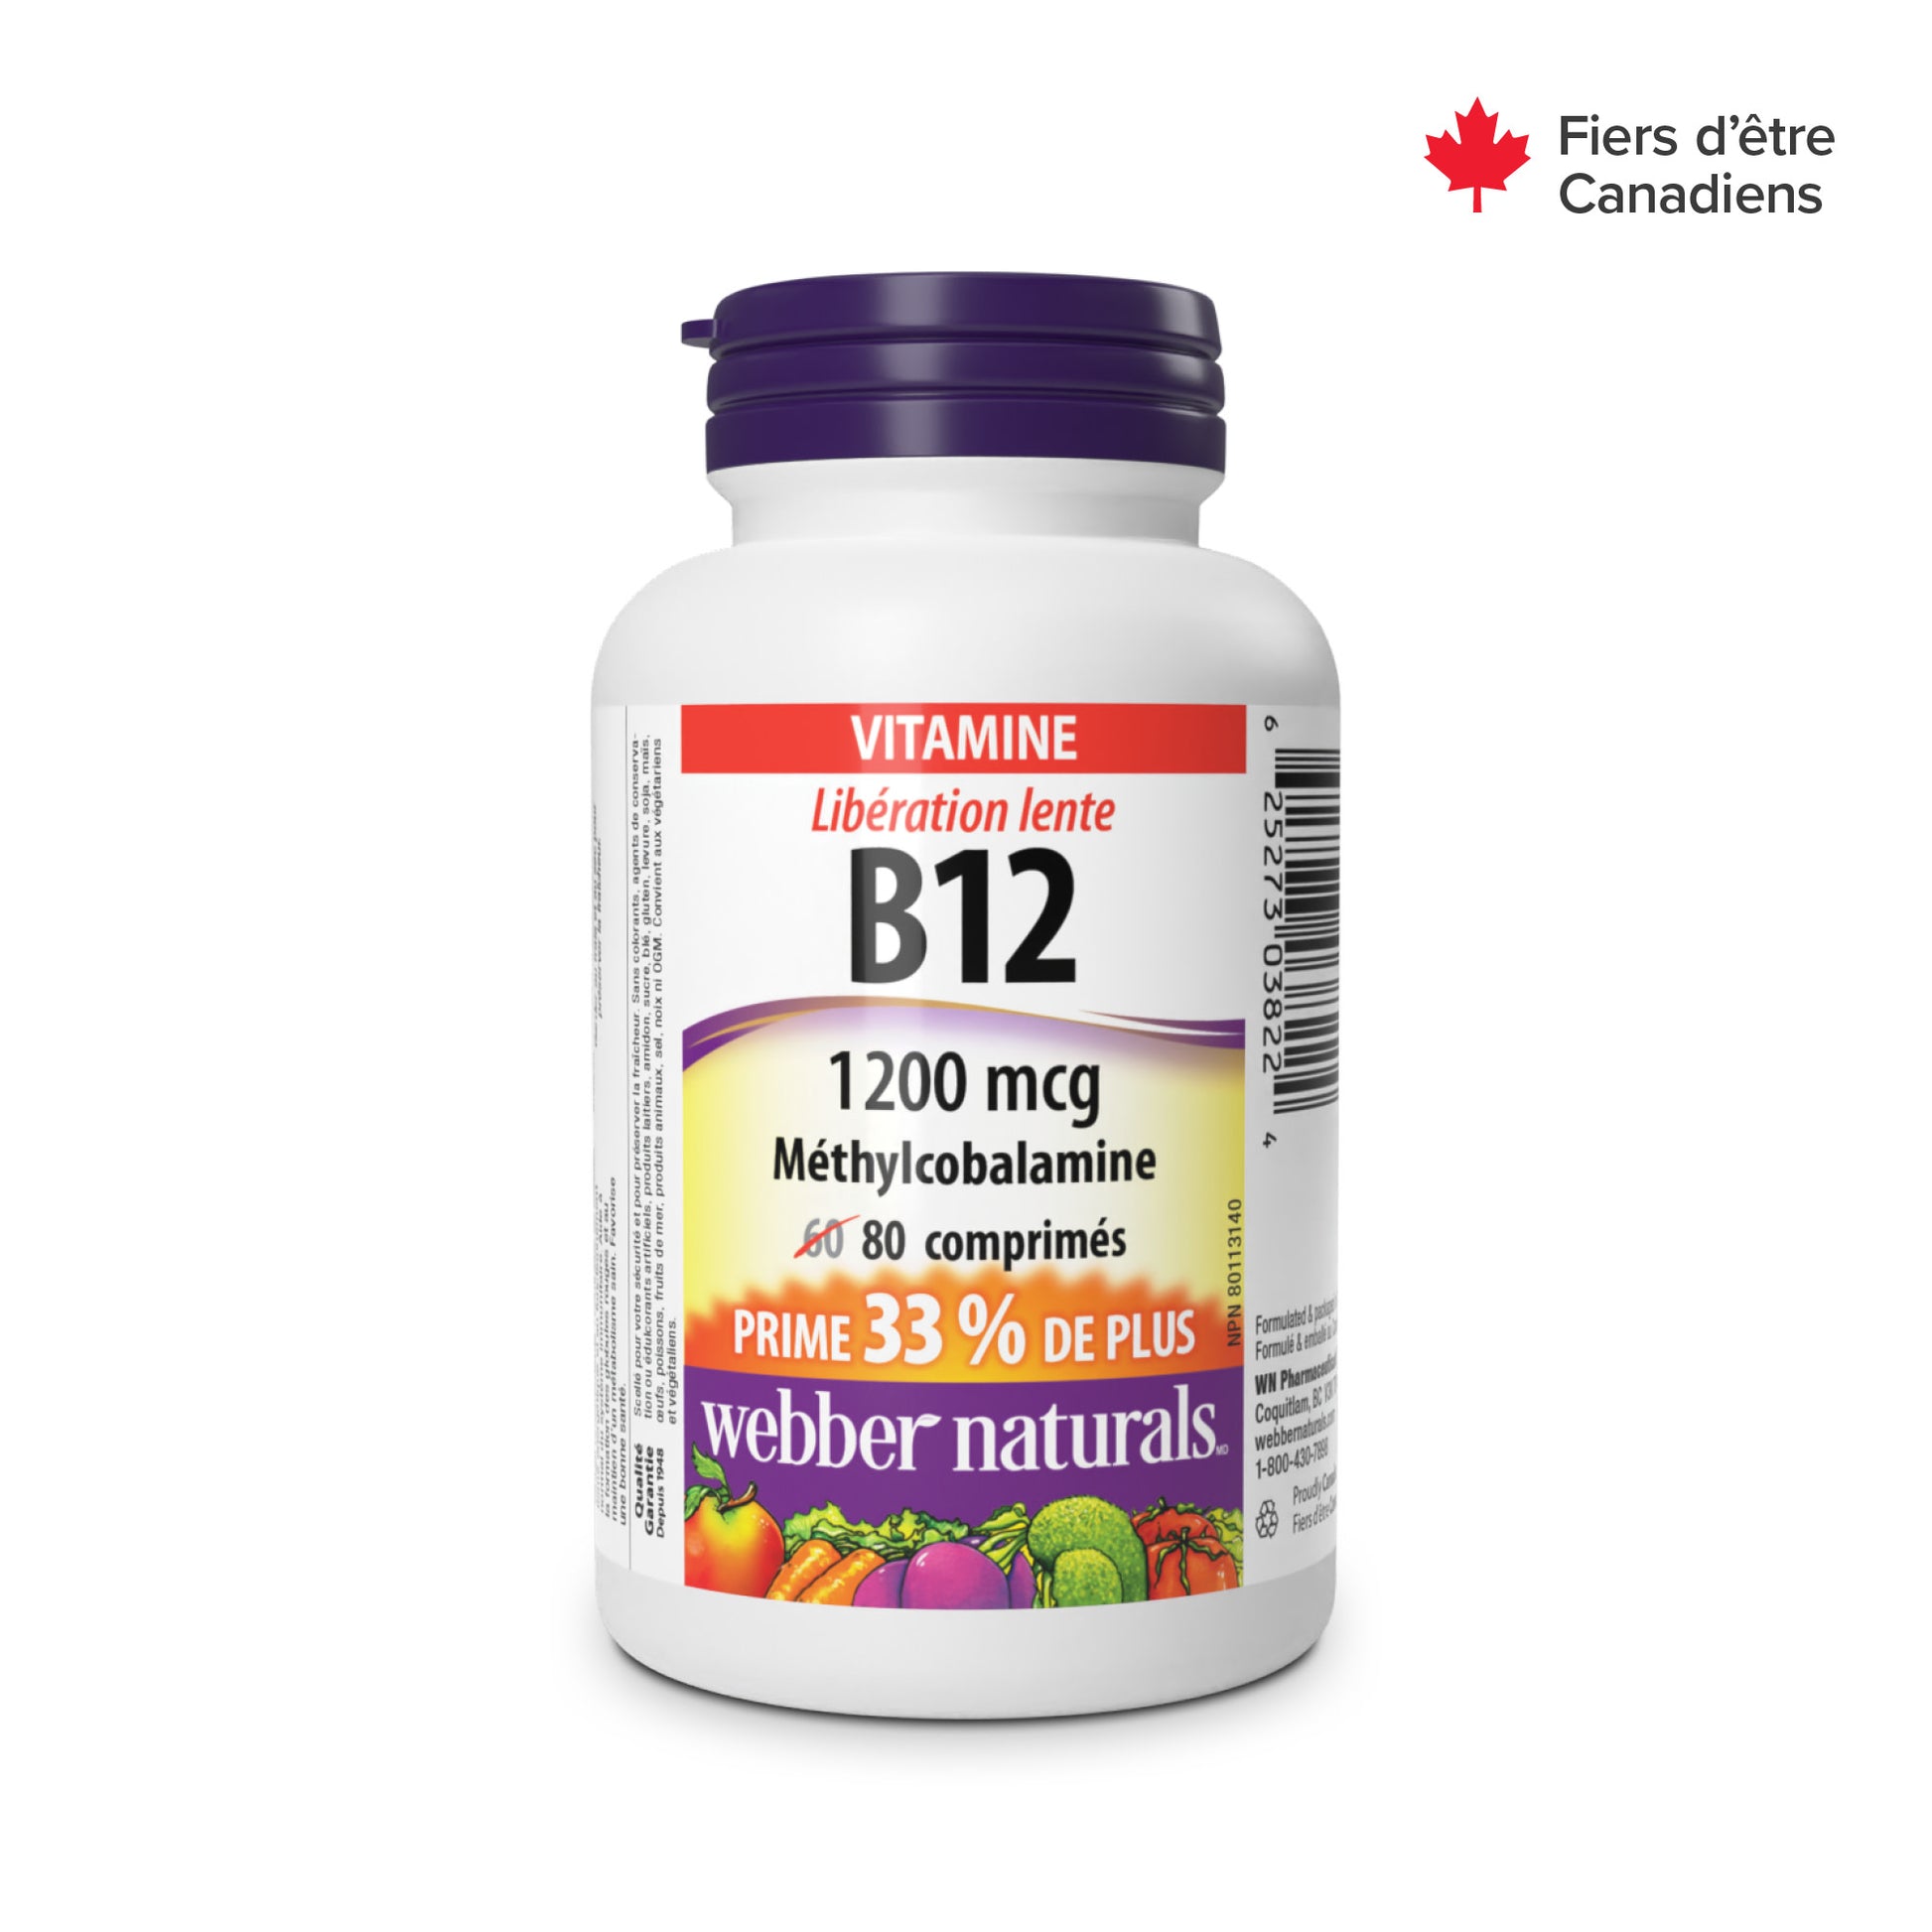 Timed-Release Vitamin B12 for Webber Naturals|v|hi-res|WN3822